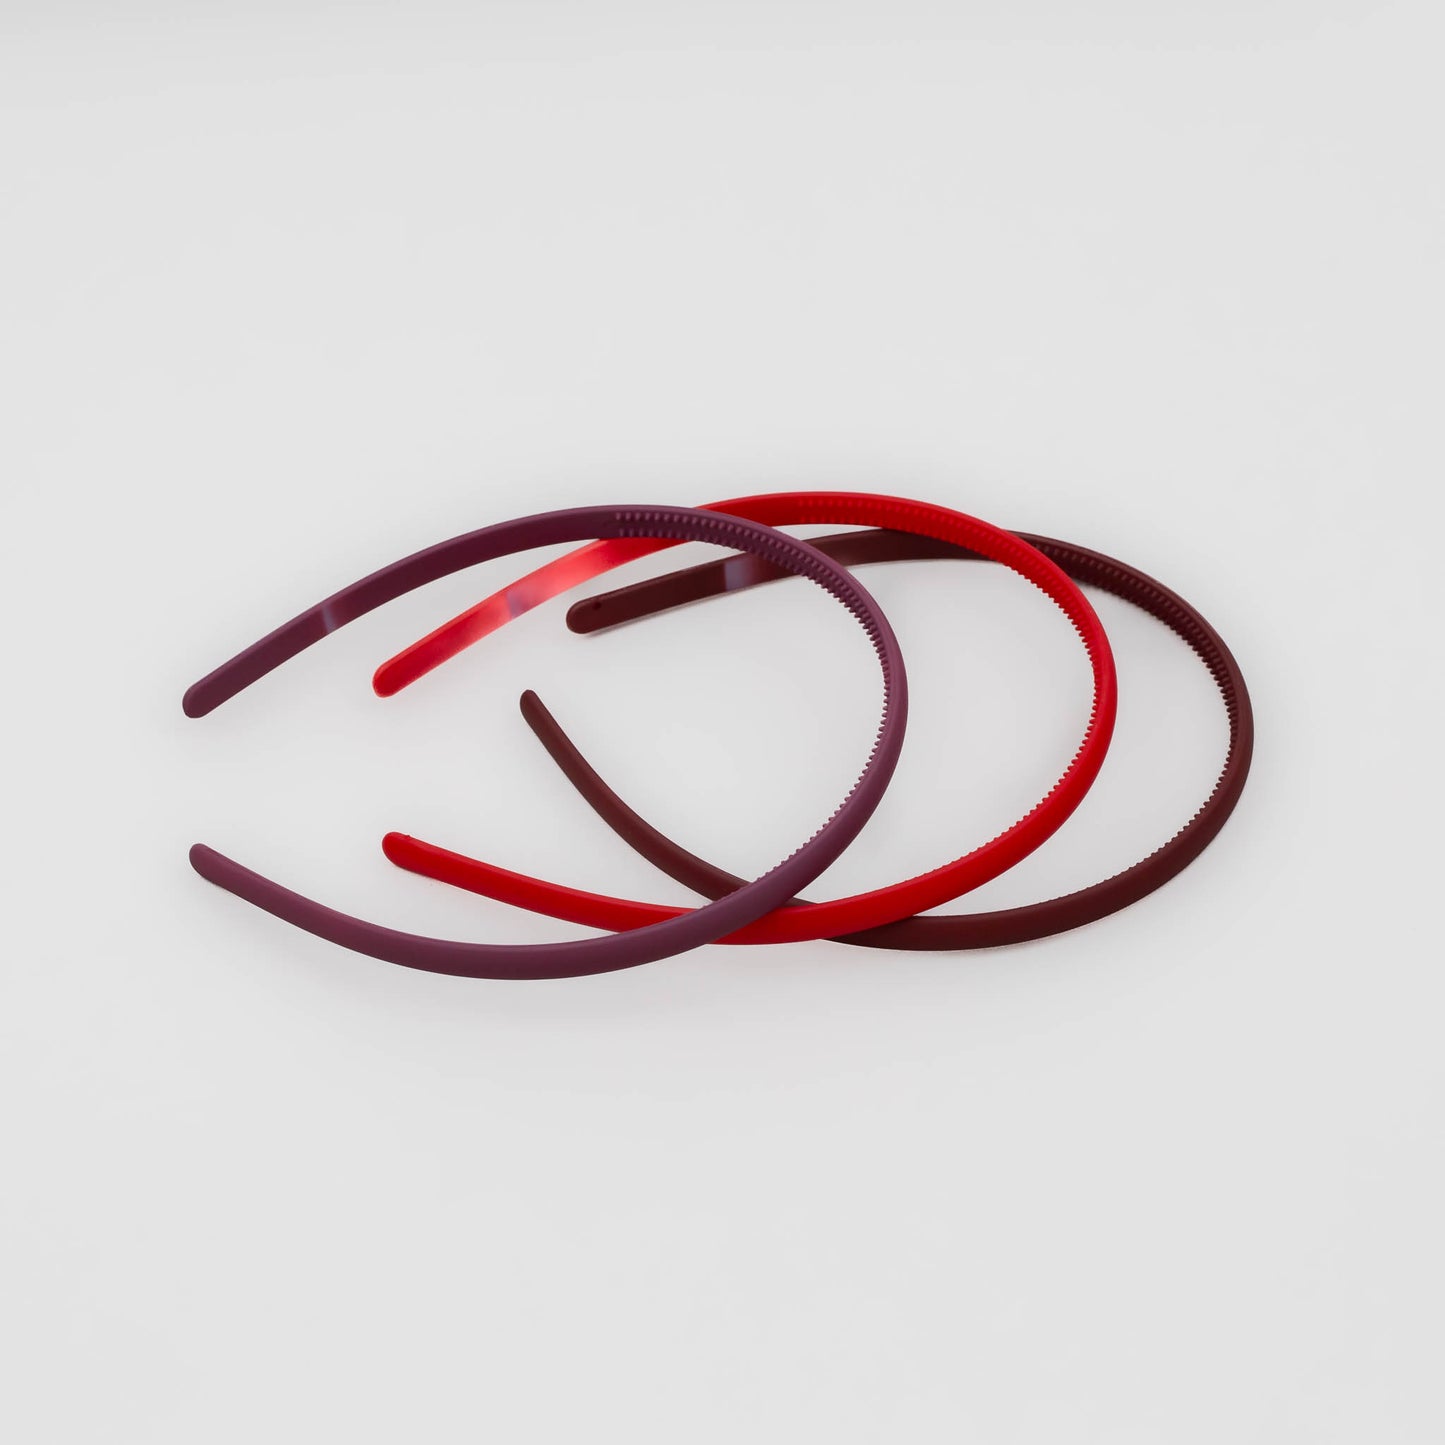 Cordeluțe de păr subțiri simple cu textură de silicon, set 3 buc - Roșu, Bordo, Mov